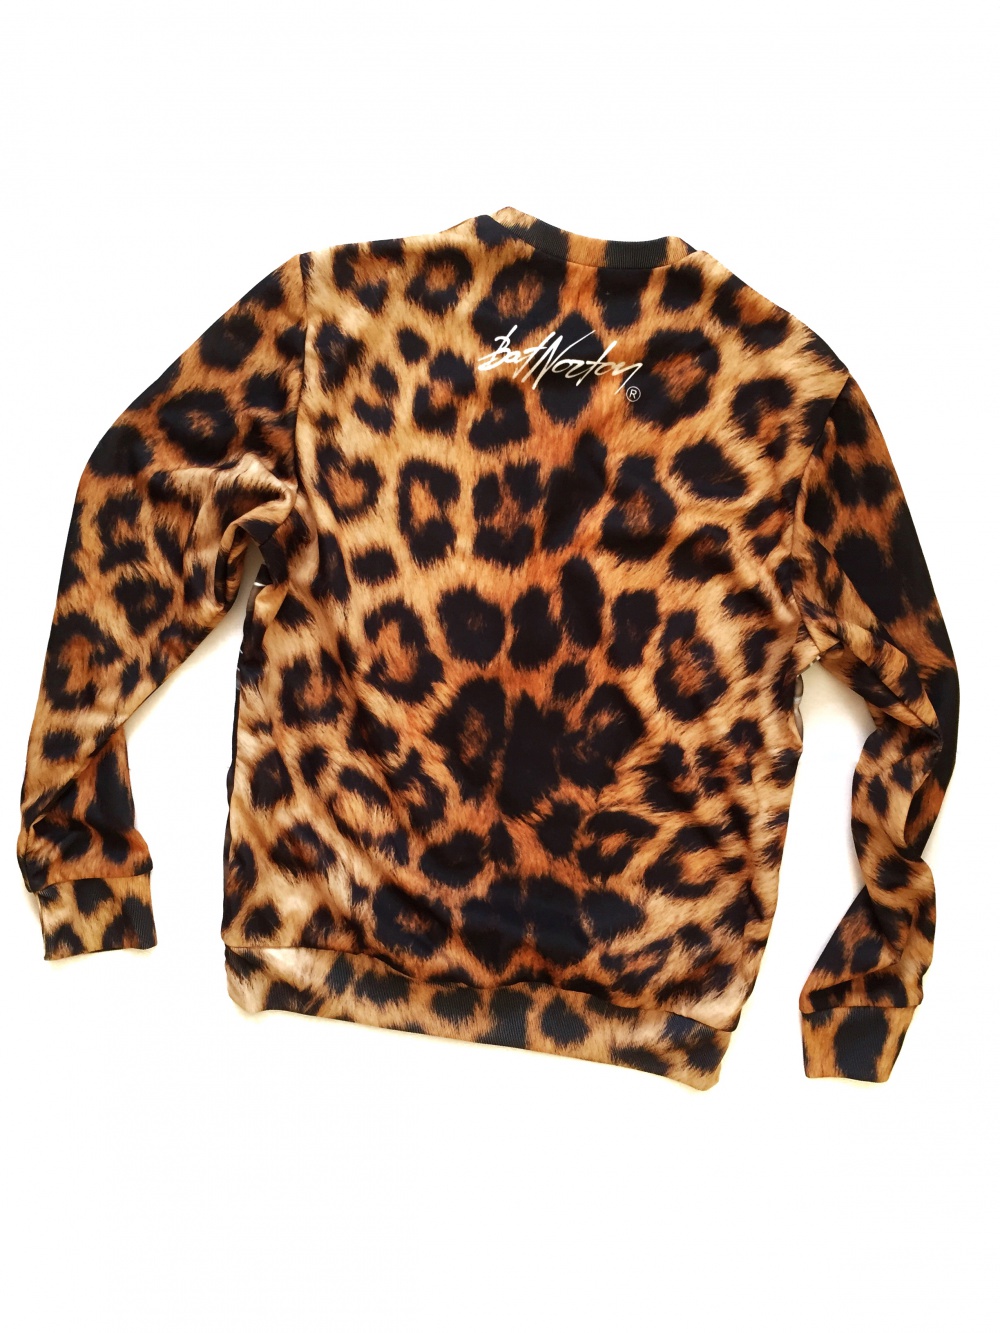 Свитшот Bat Norton Sweatshirt Magic Leopard, размер S, новый